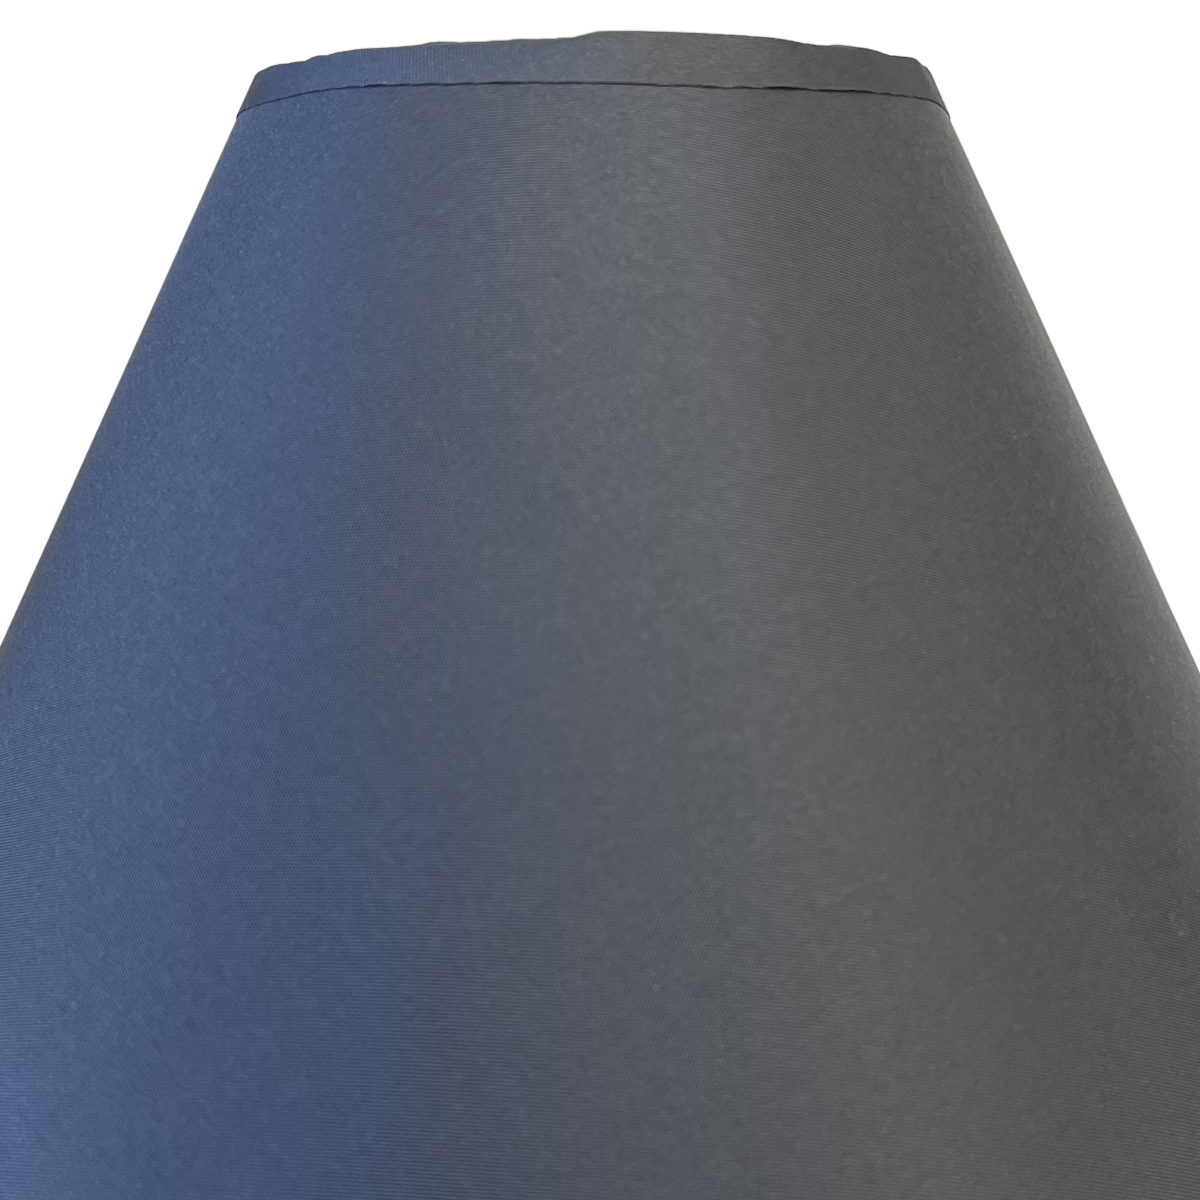 Grey lampshade